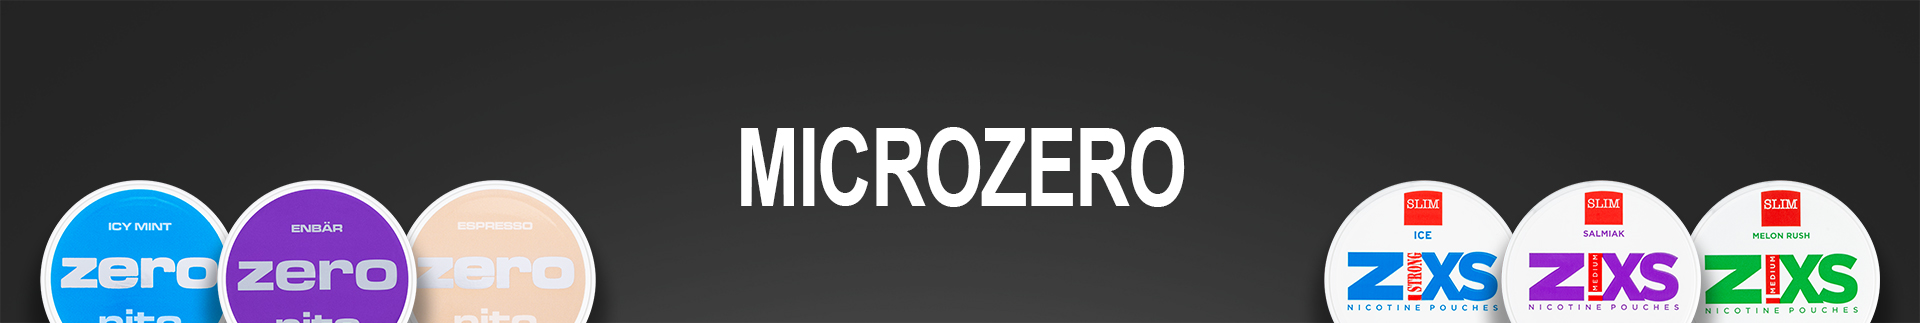 Microzero